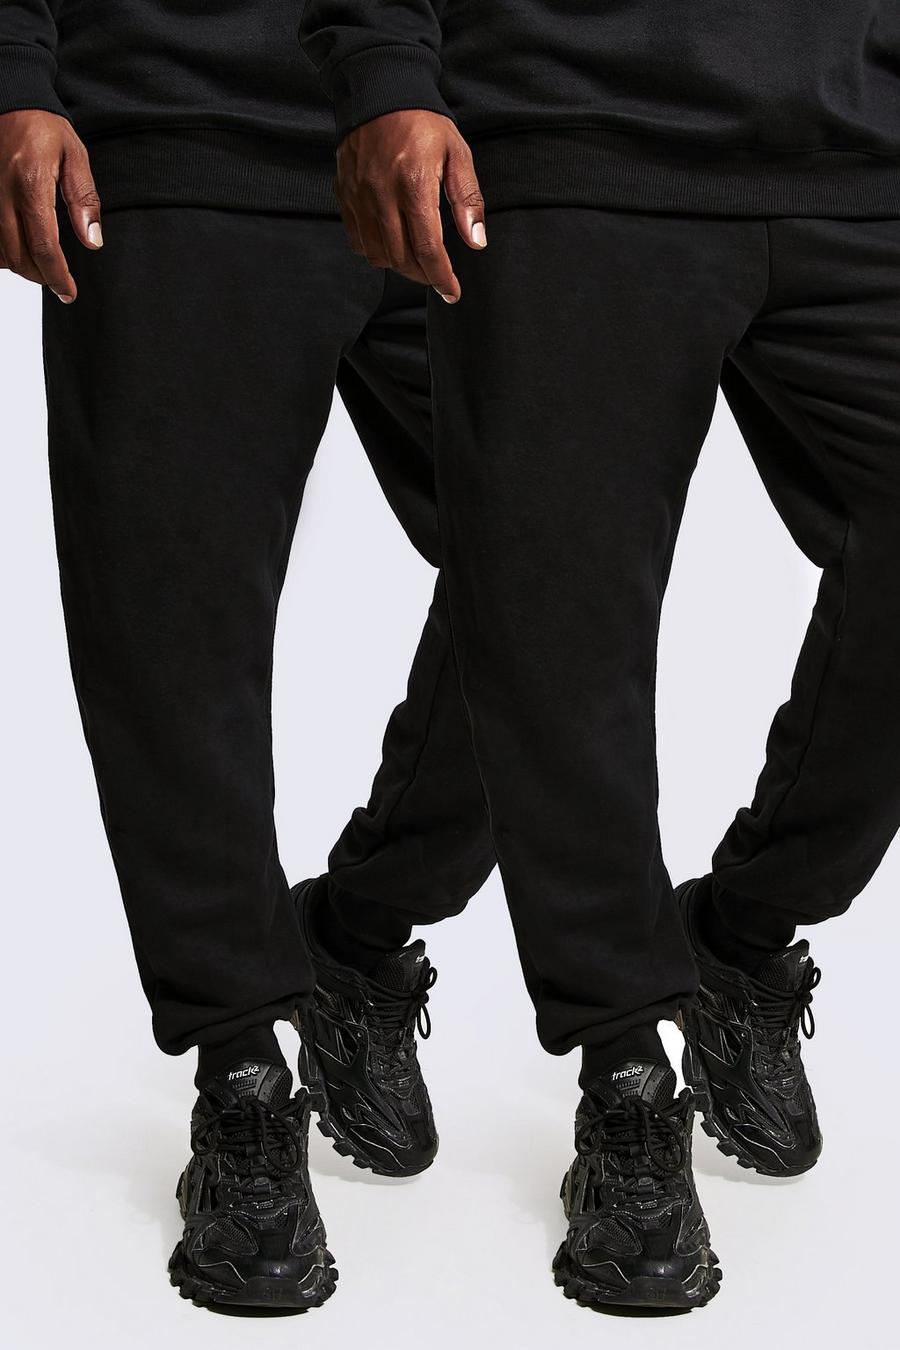 Pack de 2 pantalones de chándal Plus básicos reciclados ajustados, Black negro